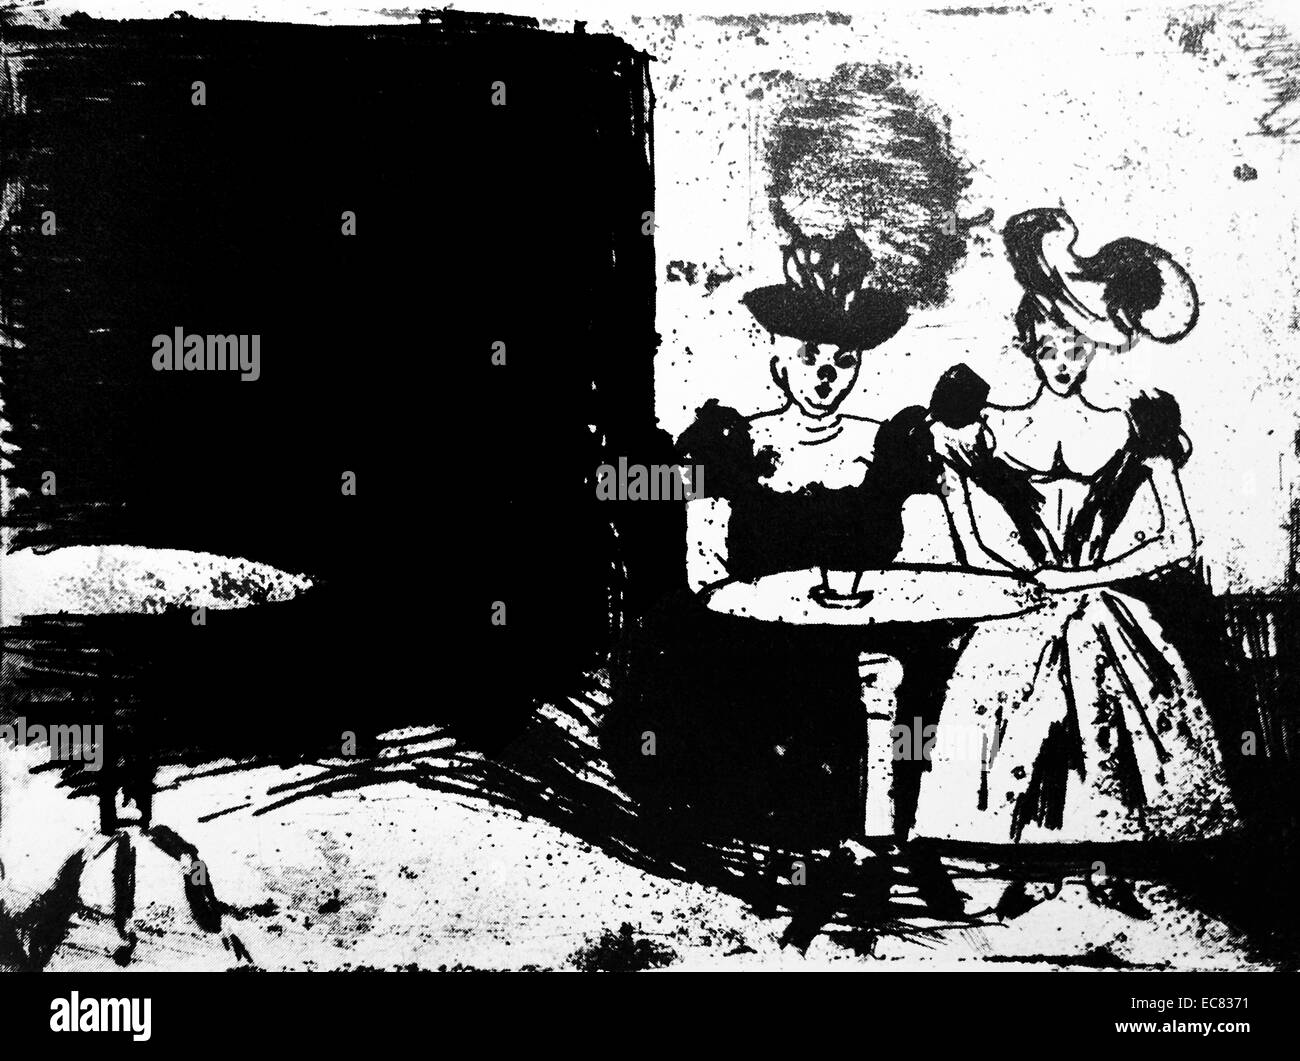 Lavoro intitolato Natcafe da Edvard Munch (1863-1944). Questo lavoro è stato prodotto nel 1901. Foto Stock